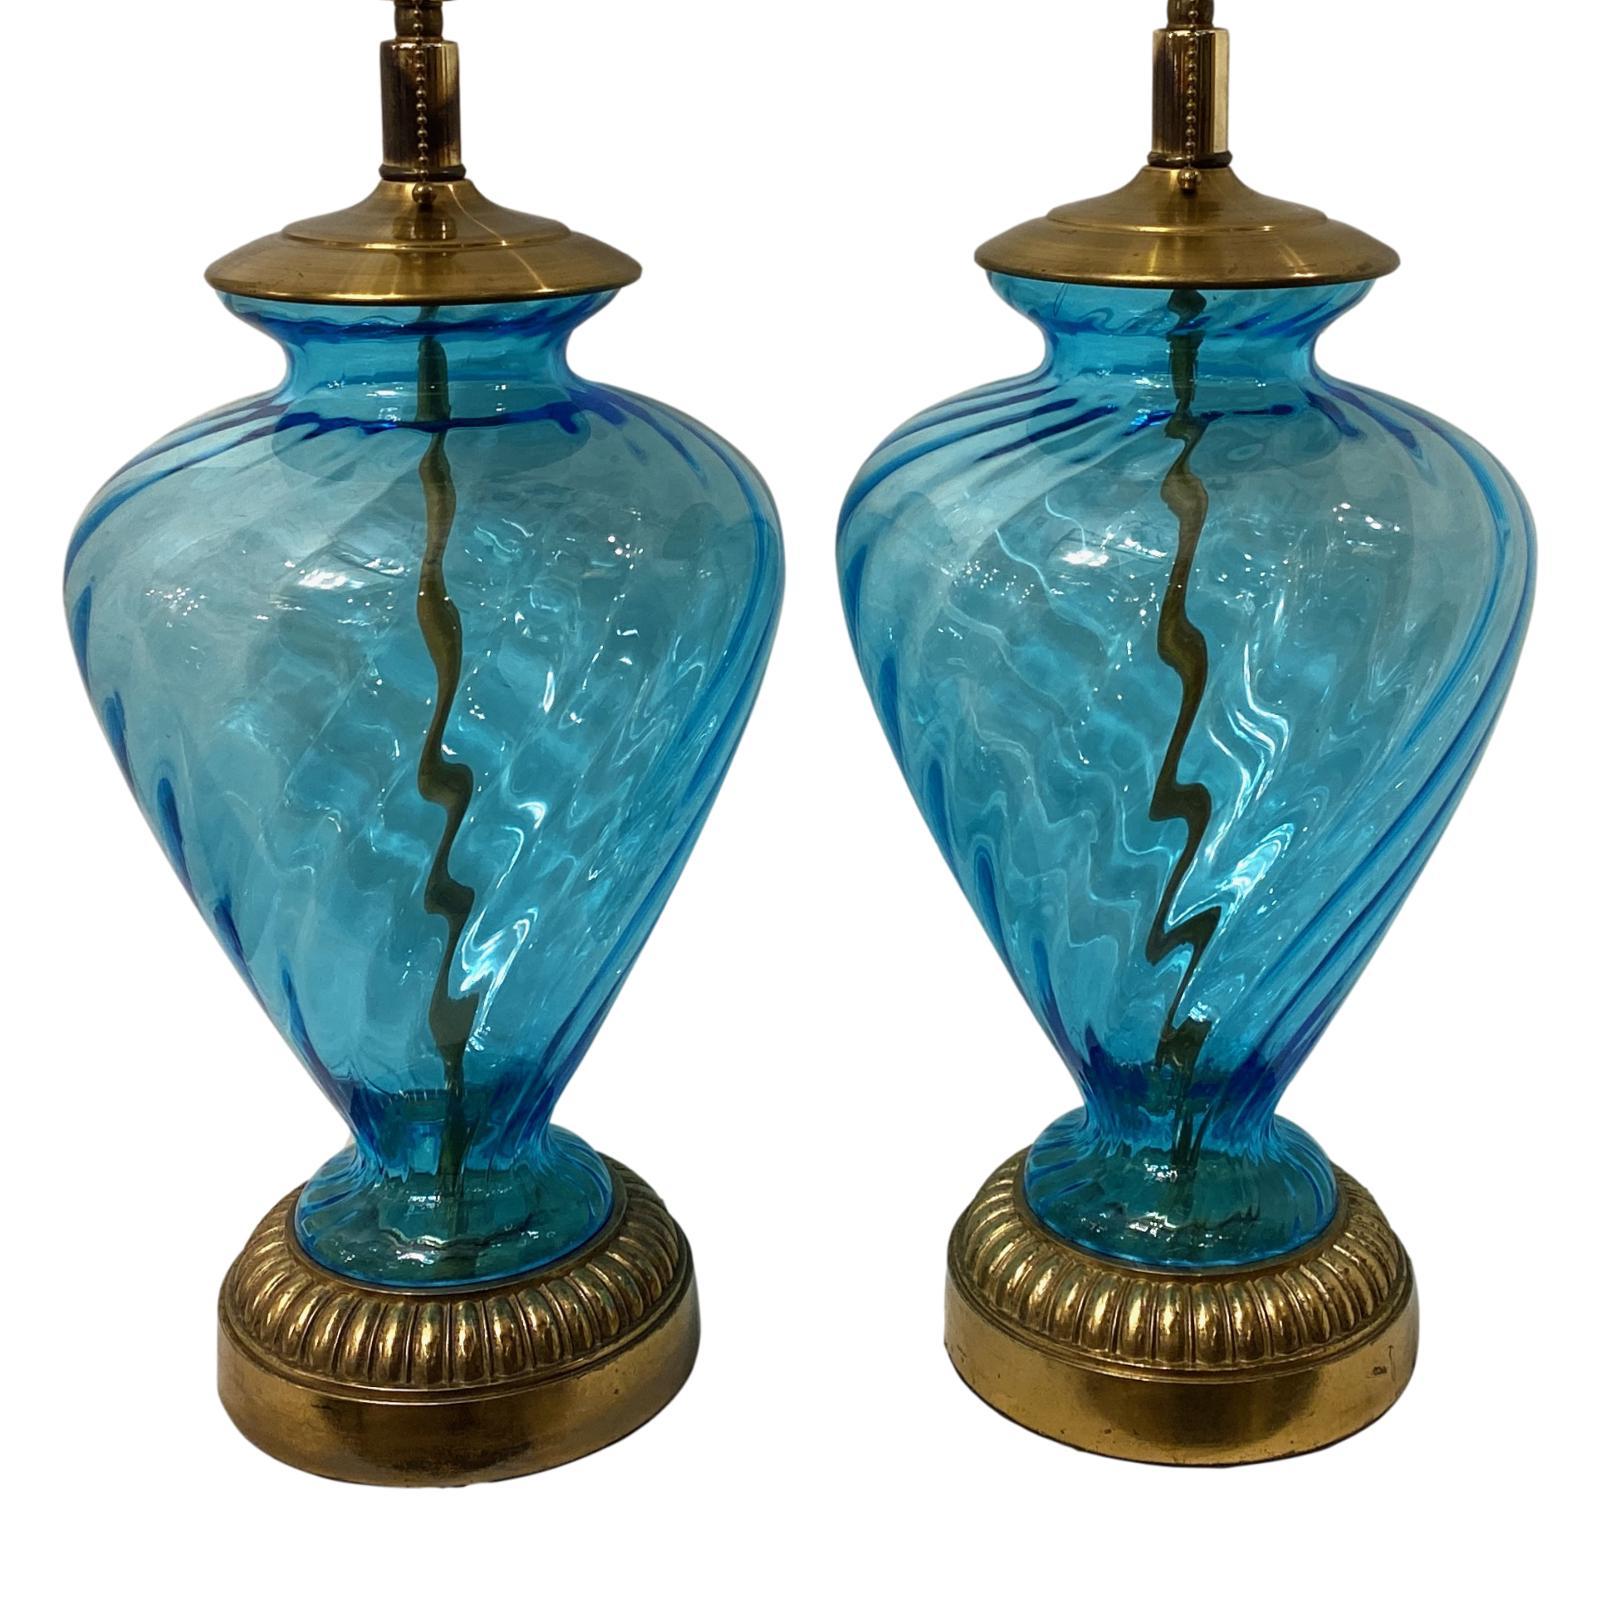 Paire de lampes de table en verre soufflé italiennes des années 1940 avec des bases en bronze.

Mesures :
Hauteur de la carrosserie 19